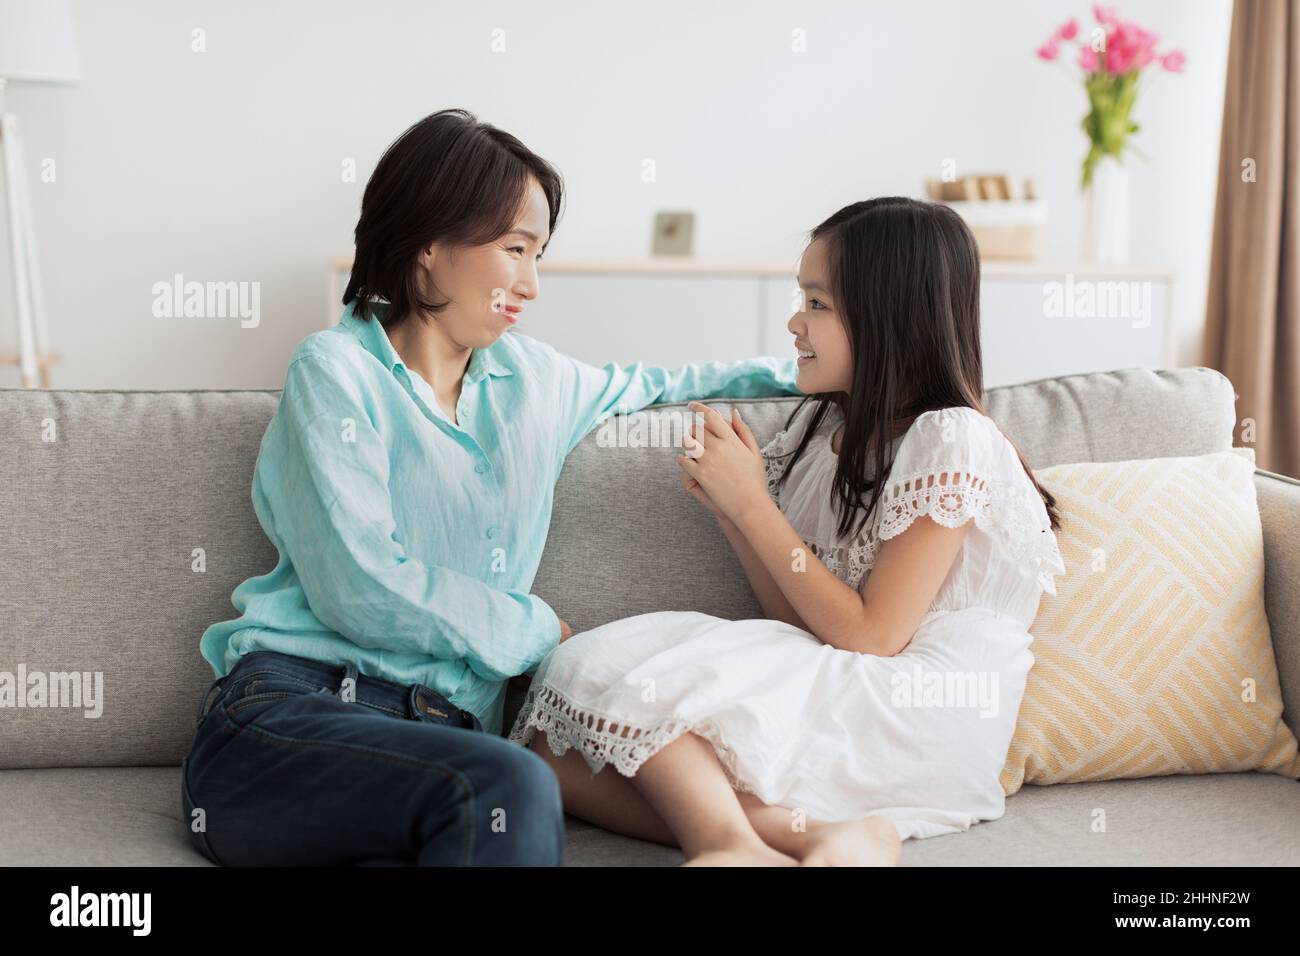 Glückliches kleines asiatisches Mädchen, das mit ihrer lächelnden Großmutter spricht und zu Hause auf der Couch sitzt Stockfoto